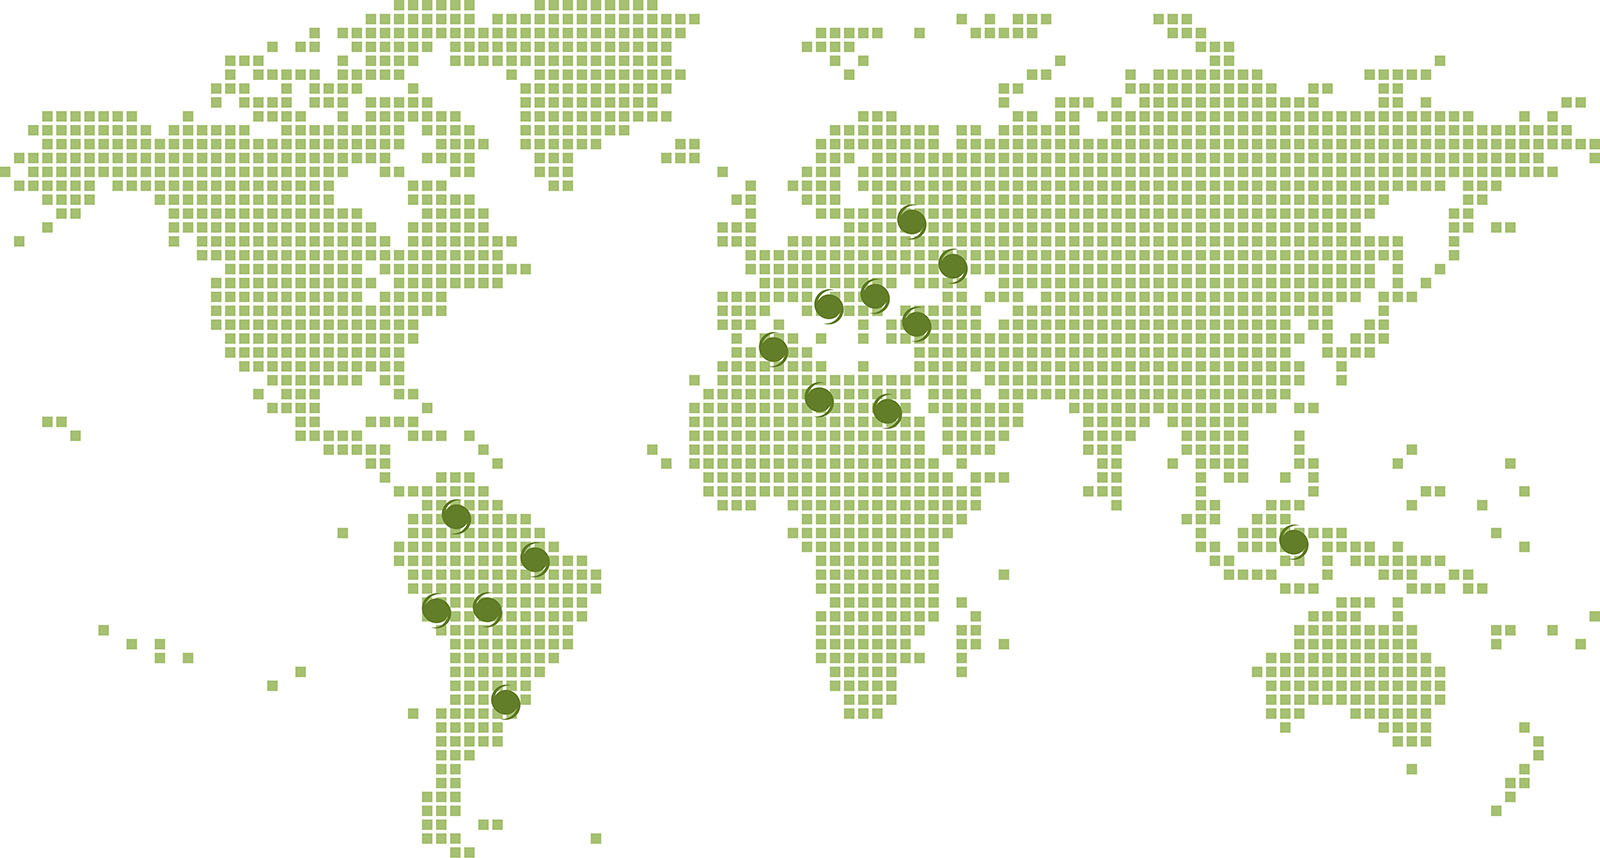 Mapa de Seedar en el mundo